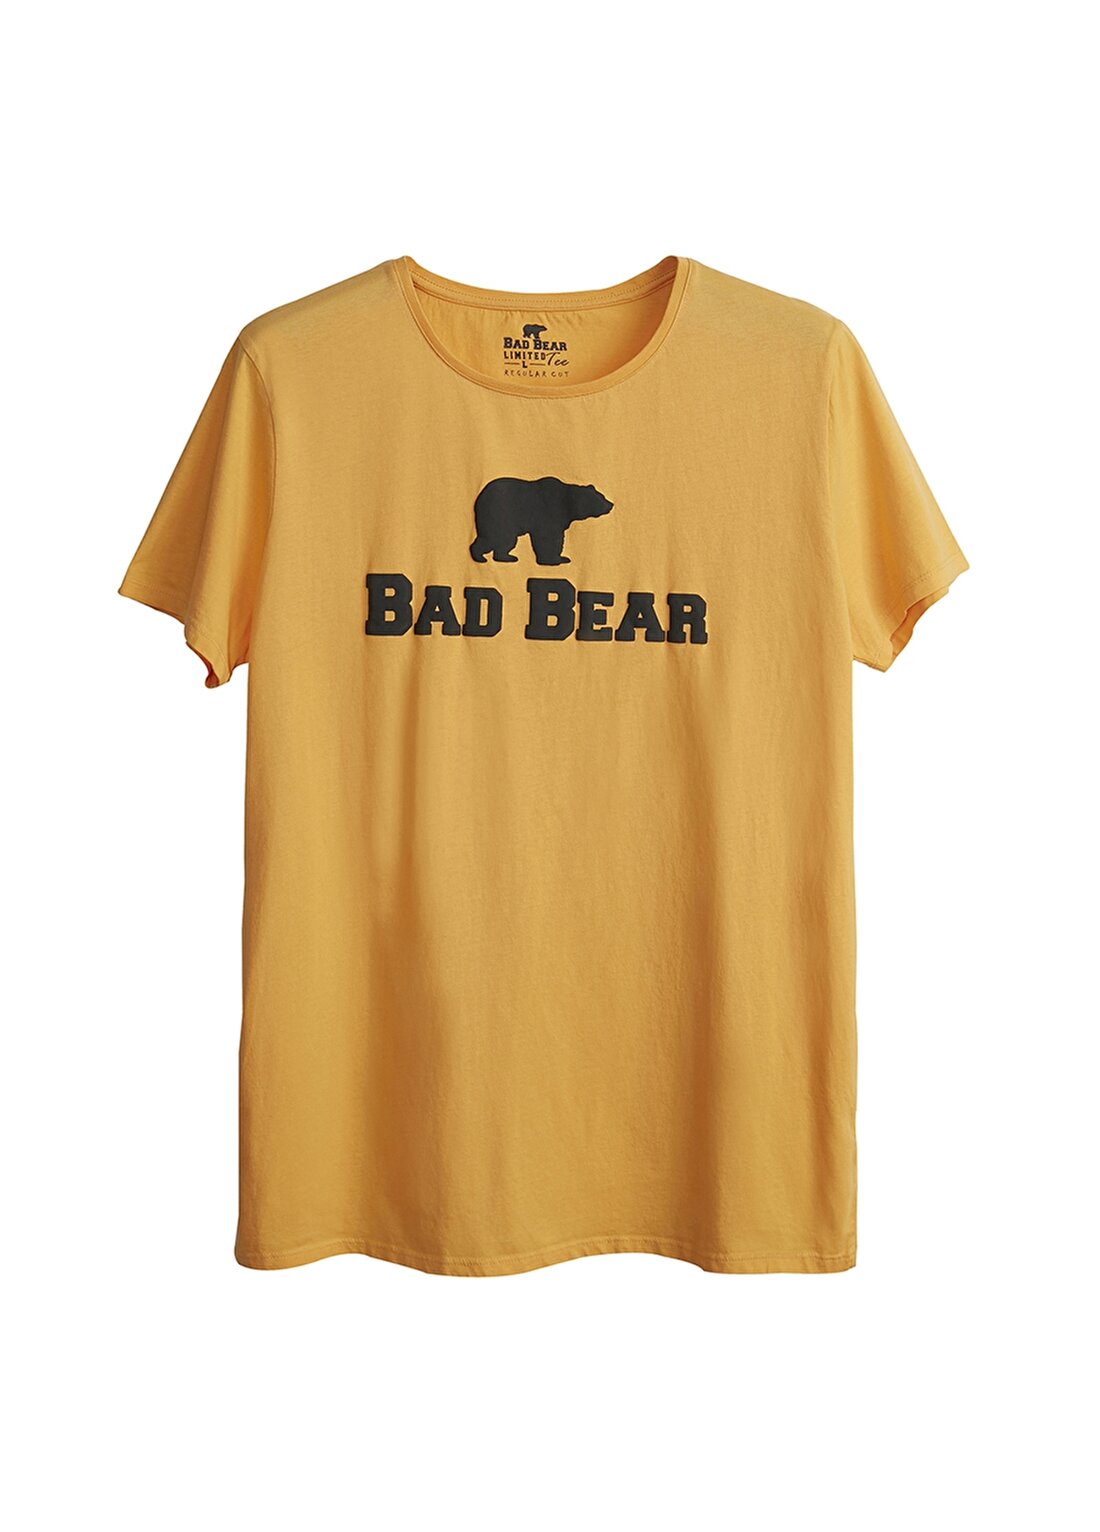 Bad Bear 19.01.07.002 Bad Bear Tee Hardal Erkek T-Shirt